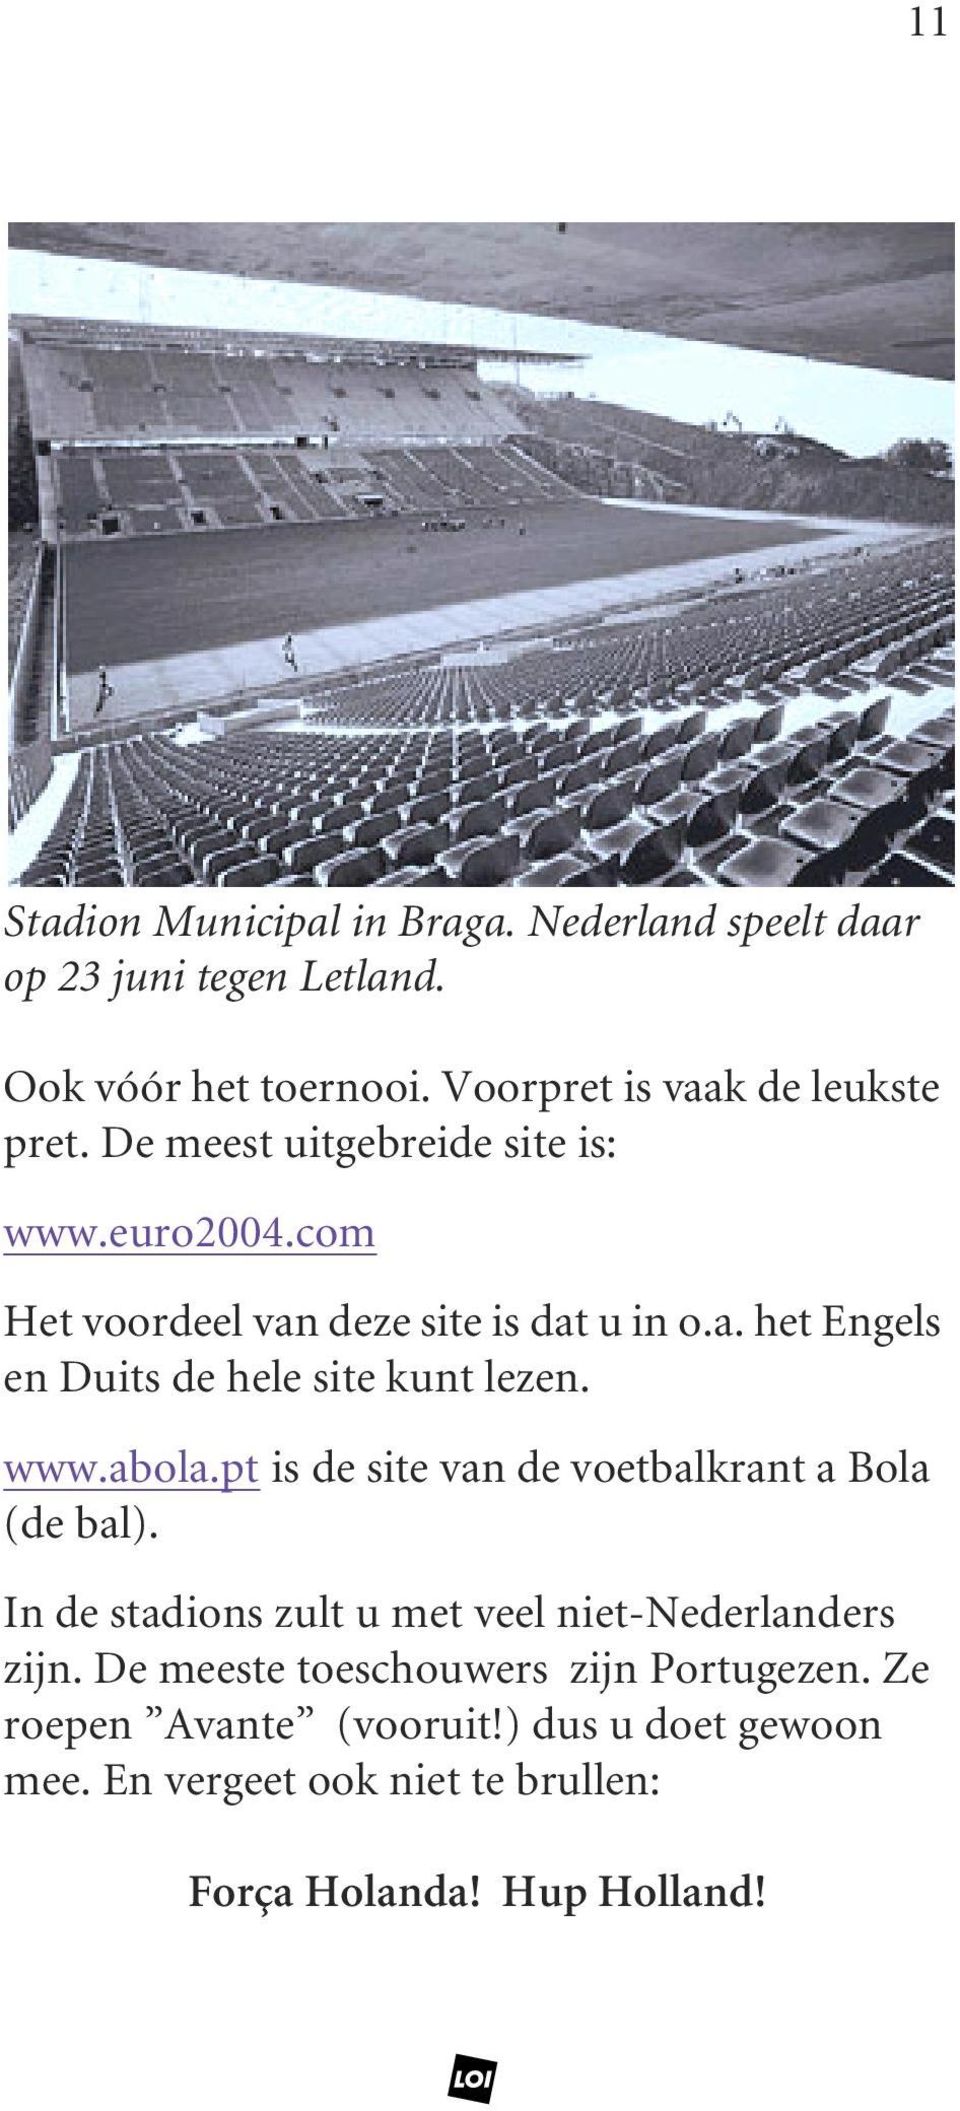 www.abola.pt is de site van de voetbalkrant a Bola (de bal). In de stadions zult u met veel niet-nederlanders zijn.